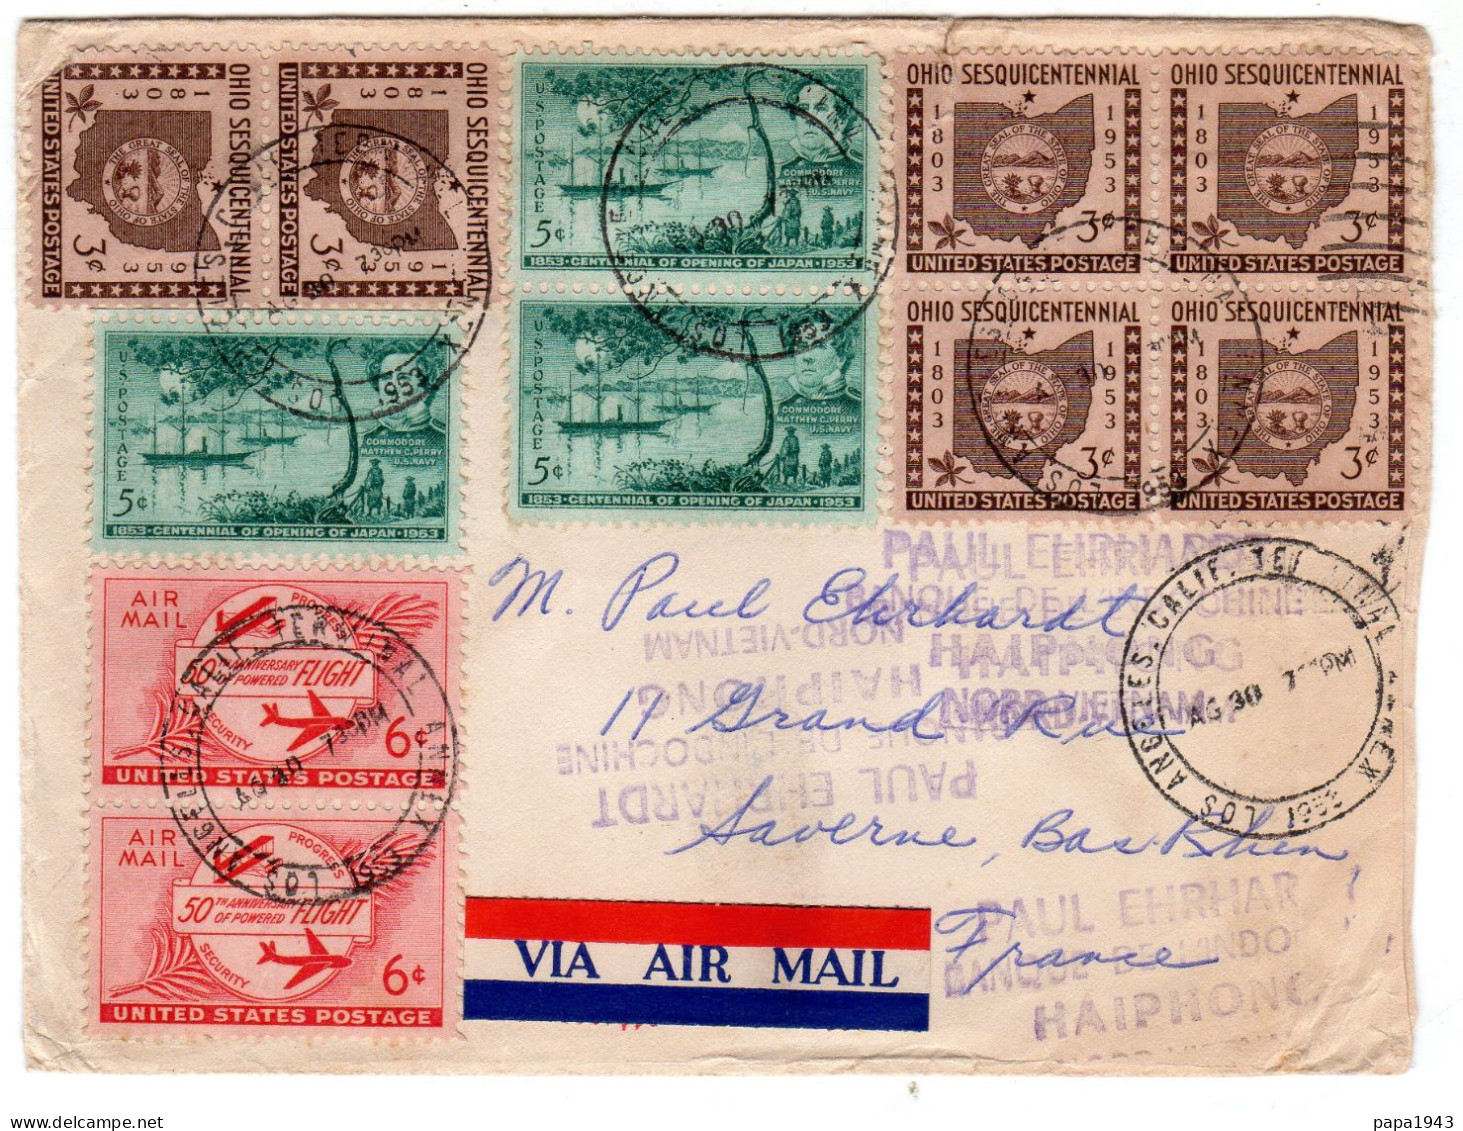 1930  Lettre De LOS ANGELES  Envoyée à SAVERNE  67 - Covers & Documents